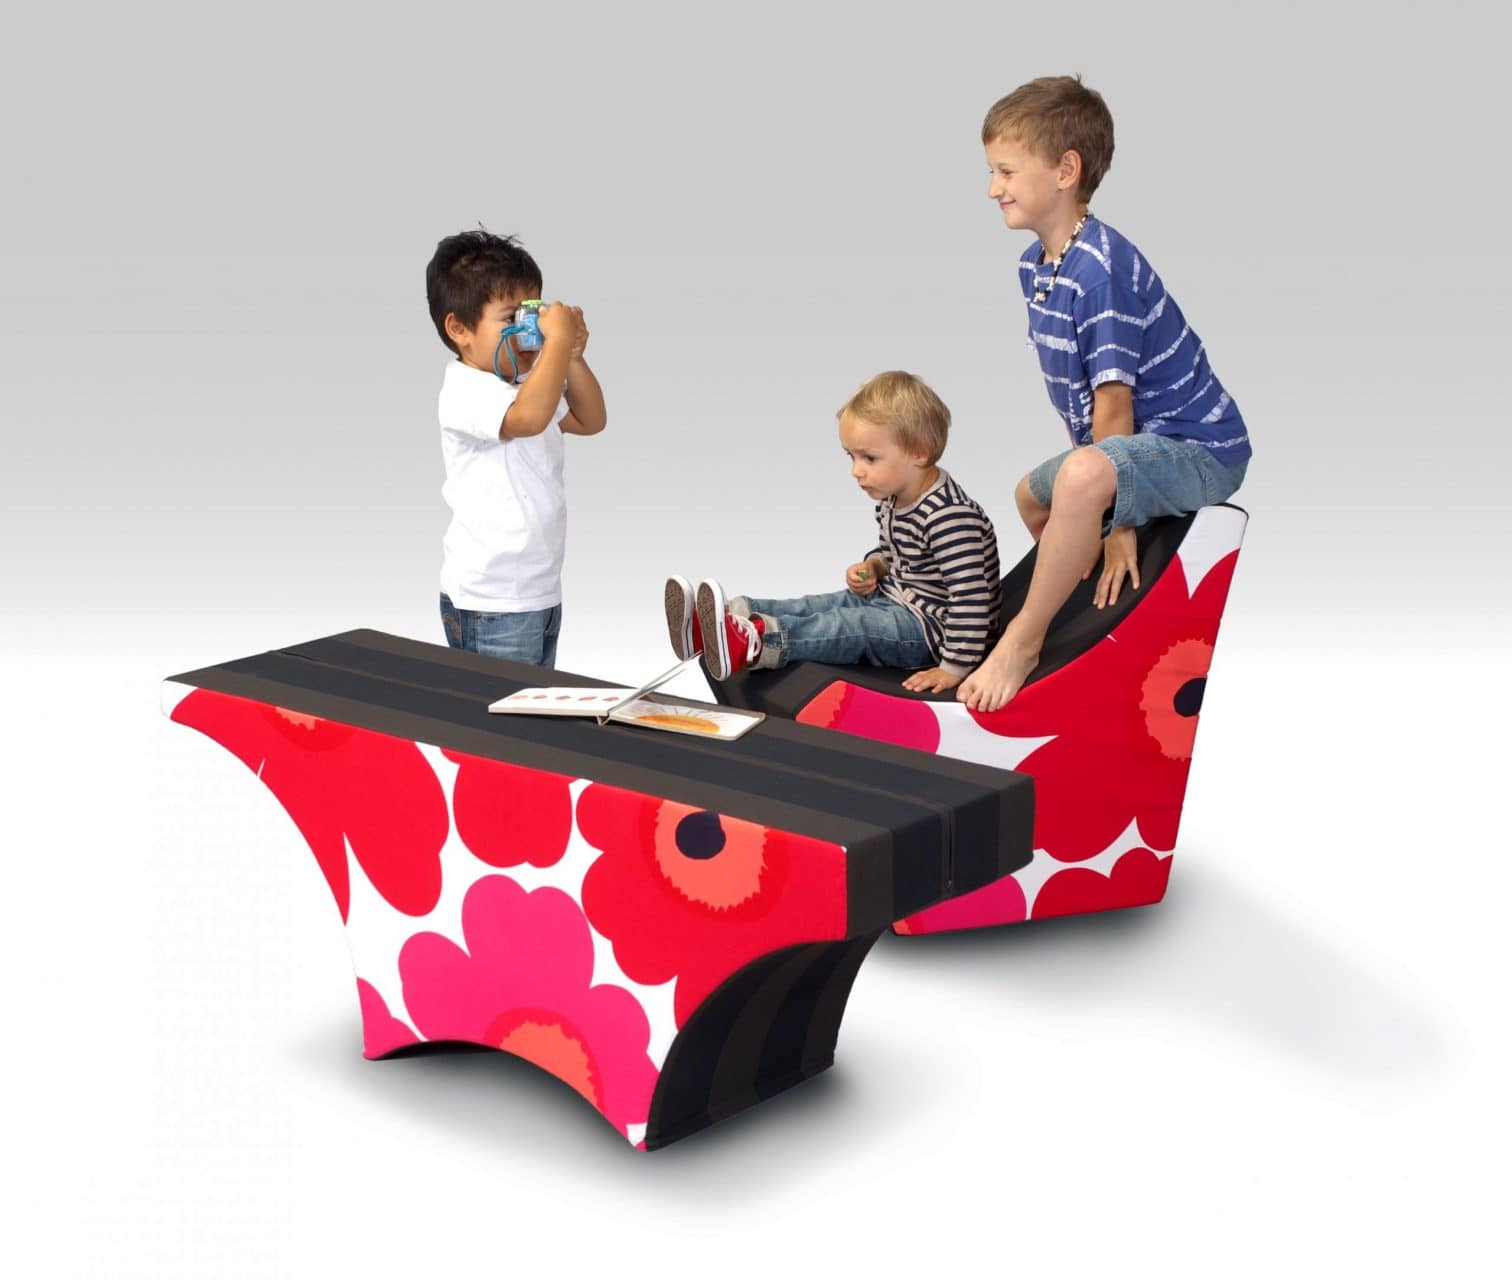 Playzzle Kindermöbel für Abenteuer und Spaß Möbeldesign CAD Konstruktion 3D Animation Büro für Industriedesign Germany Duisburg